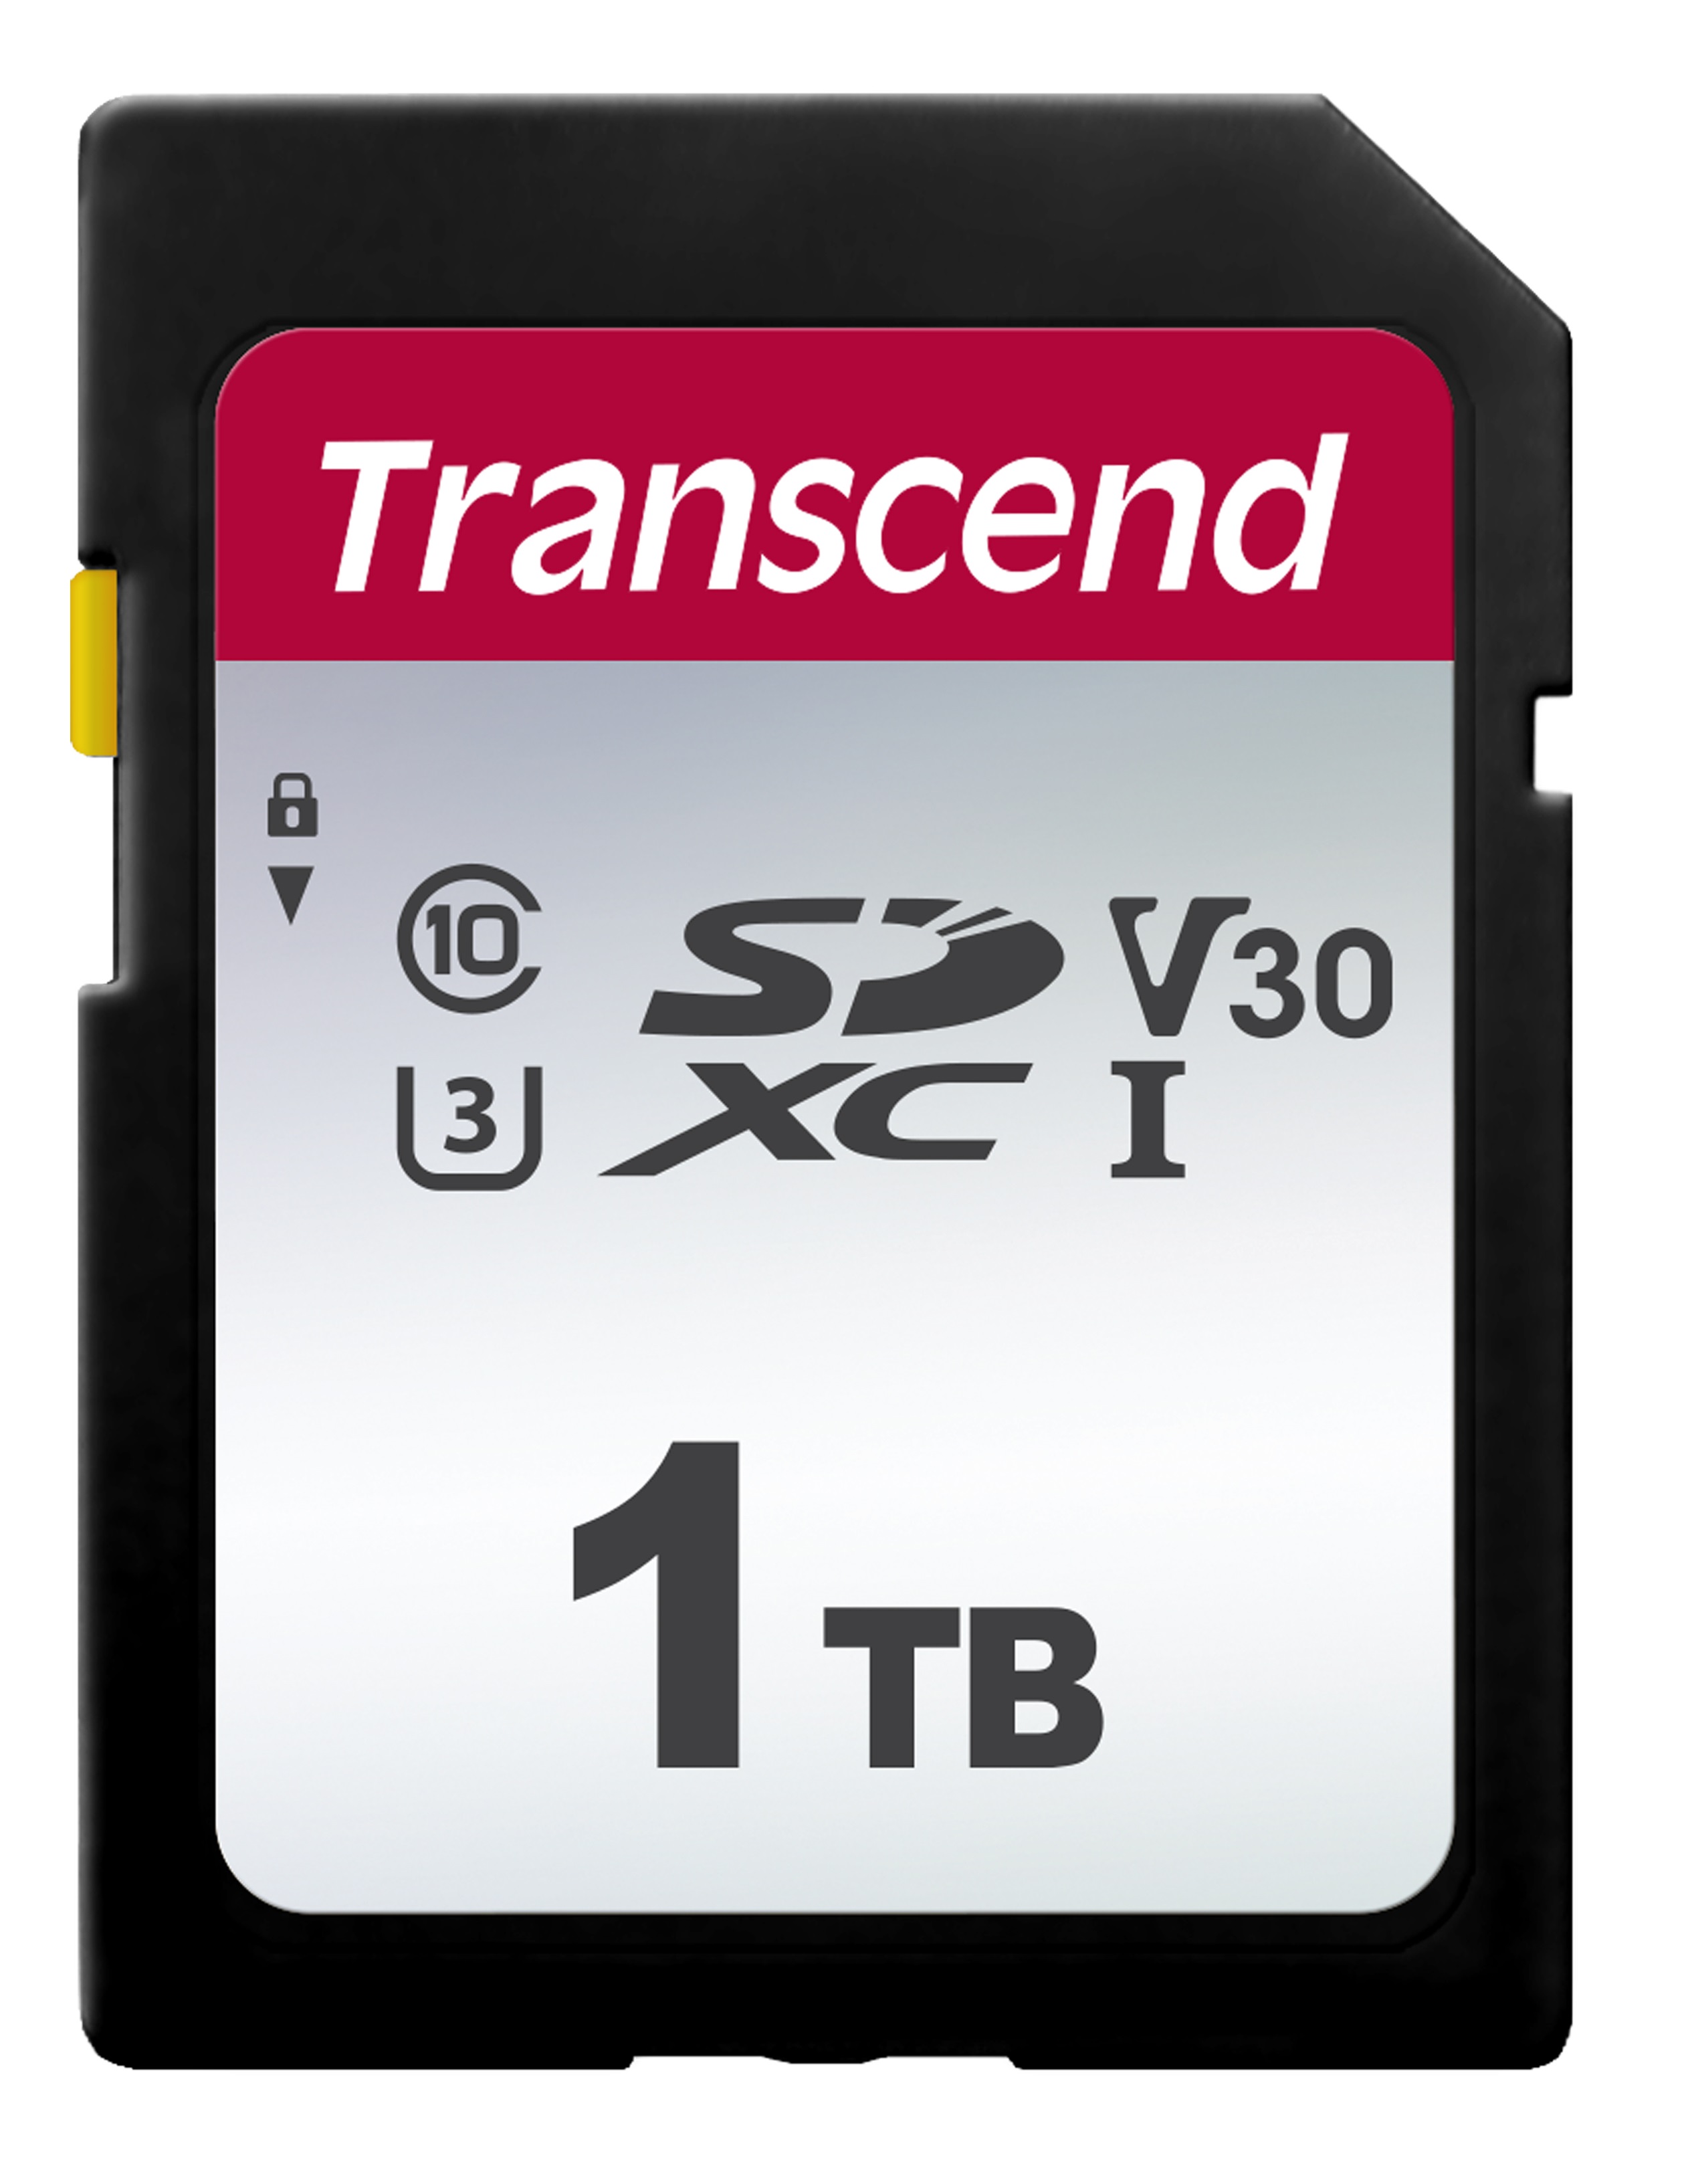 Transcend 1000 GB SDC300S Transcend 1TB SDXC 300S (Class 10) UHS-I U3 V30 paměťová karta, 100 MB/s R, 85 MB/s W